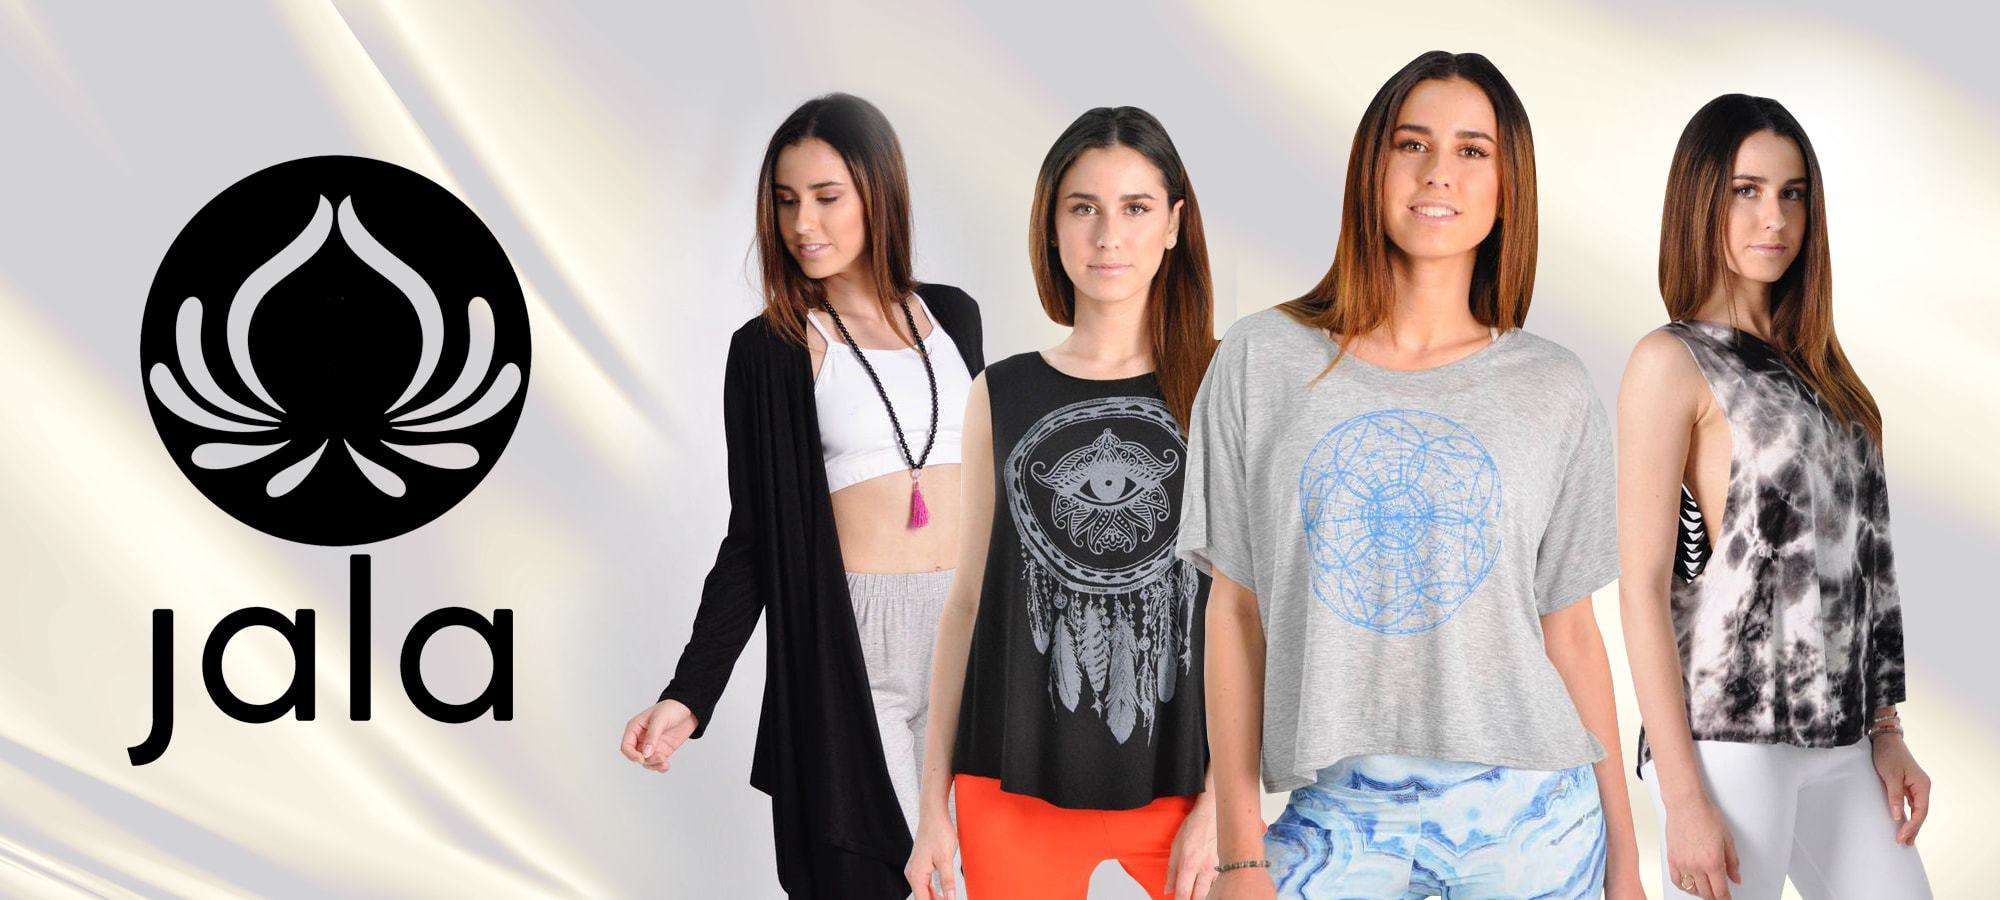 Jala Clothing - Marca de ropa inspirada en el yoga